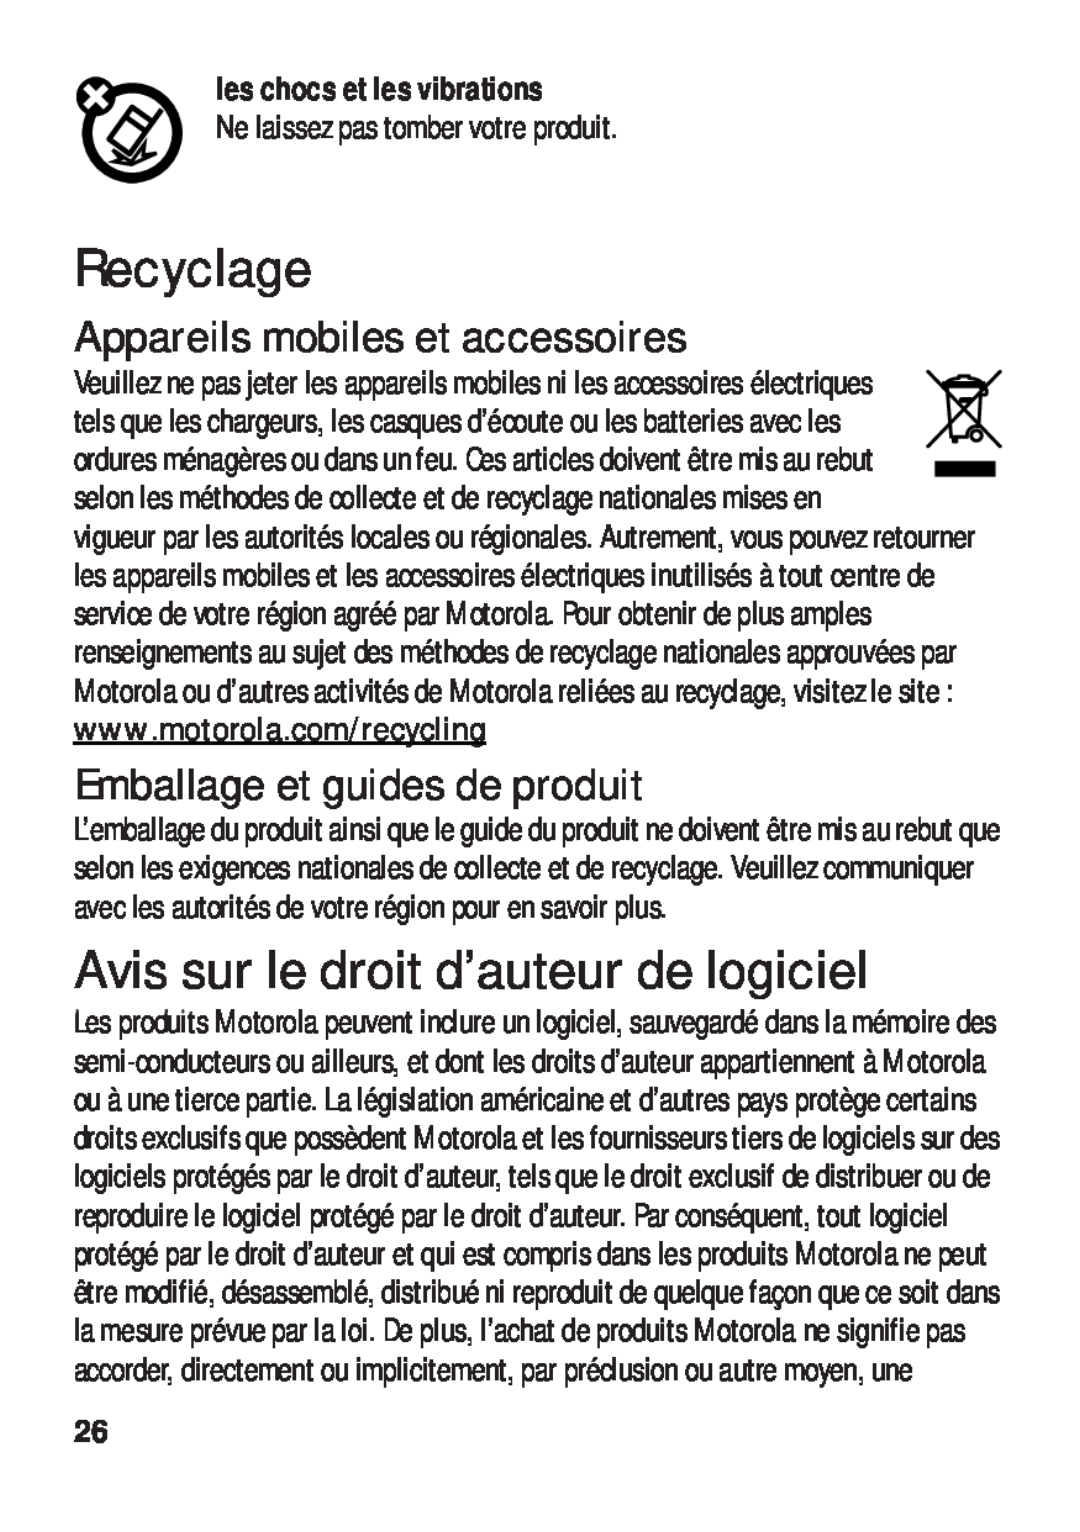 Motorola TX500 manual Recyclage, Avis sur le droit d’auteur de logiciel, Appareils mobiles et accessoires 